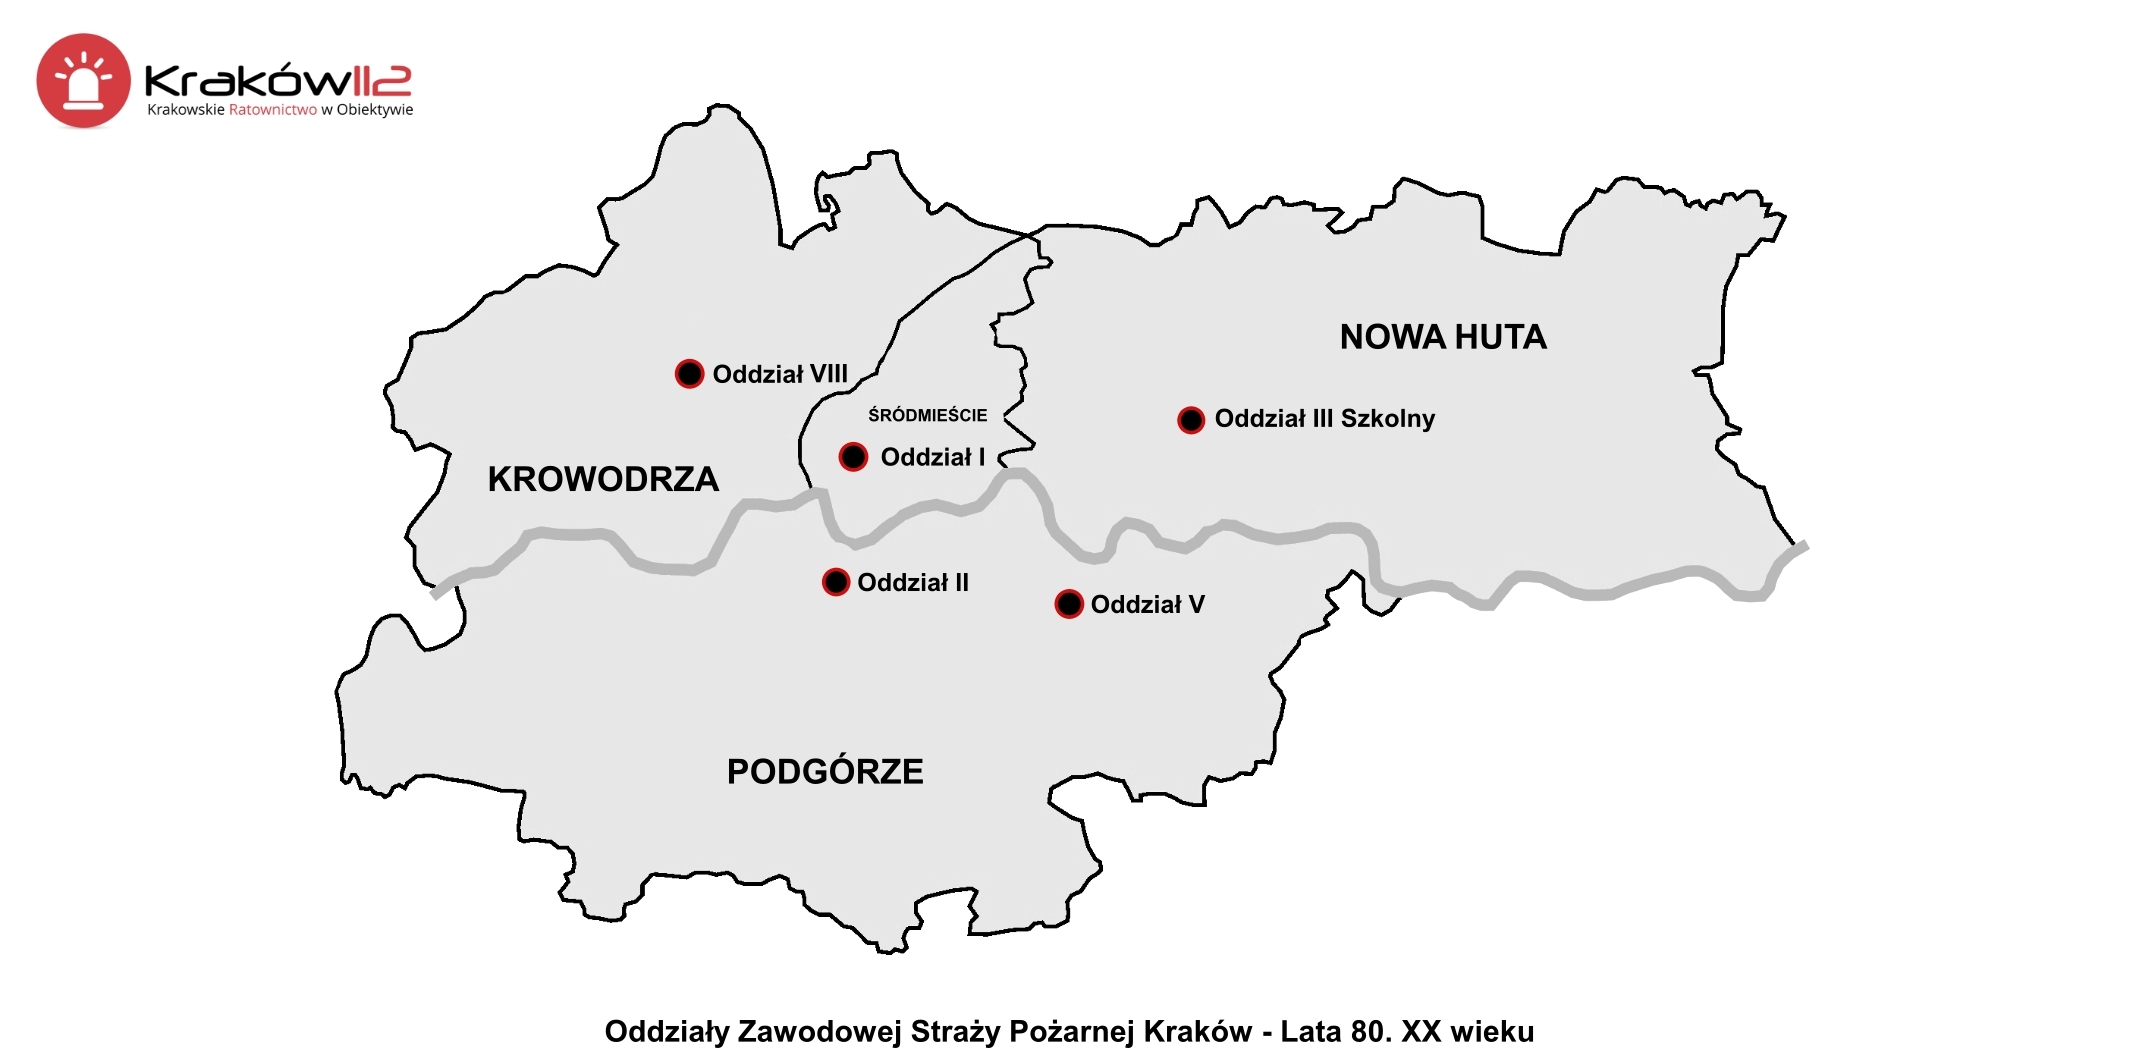 Odzialy Zawodowej Strazy Pozarnej Krakow lata 80 xx wieku